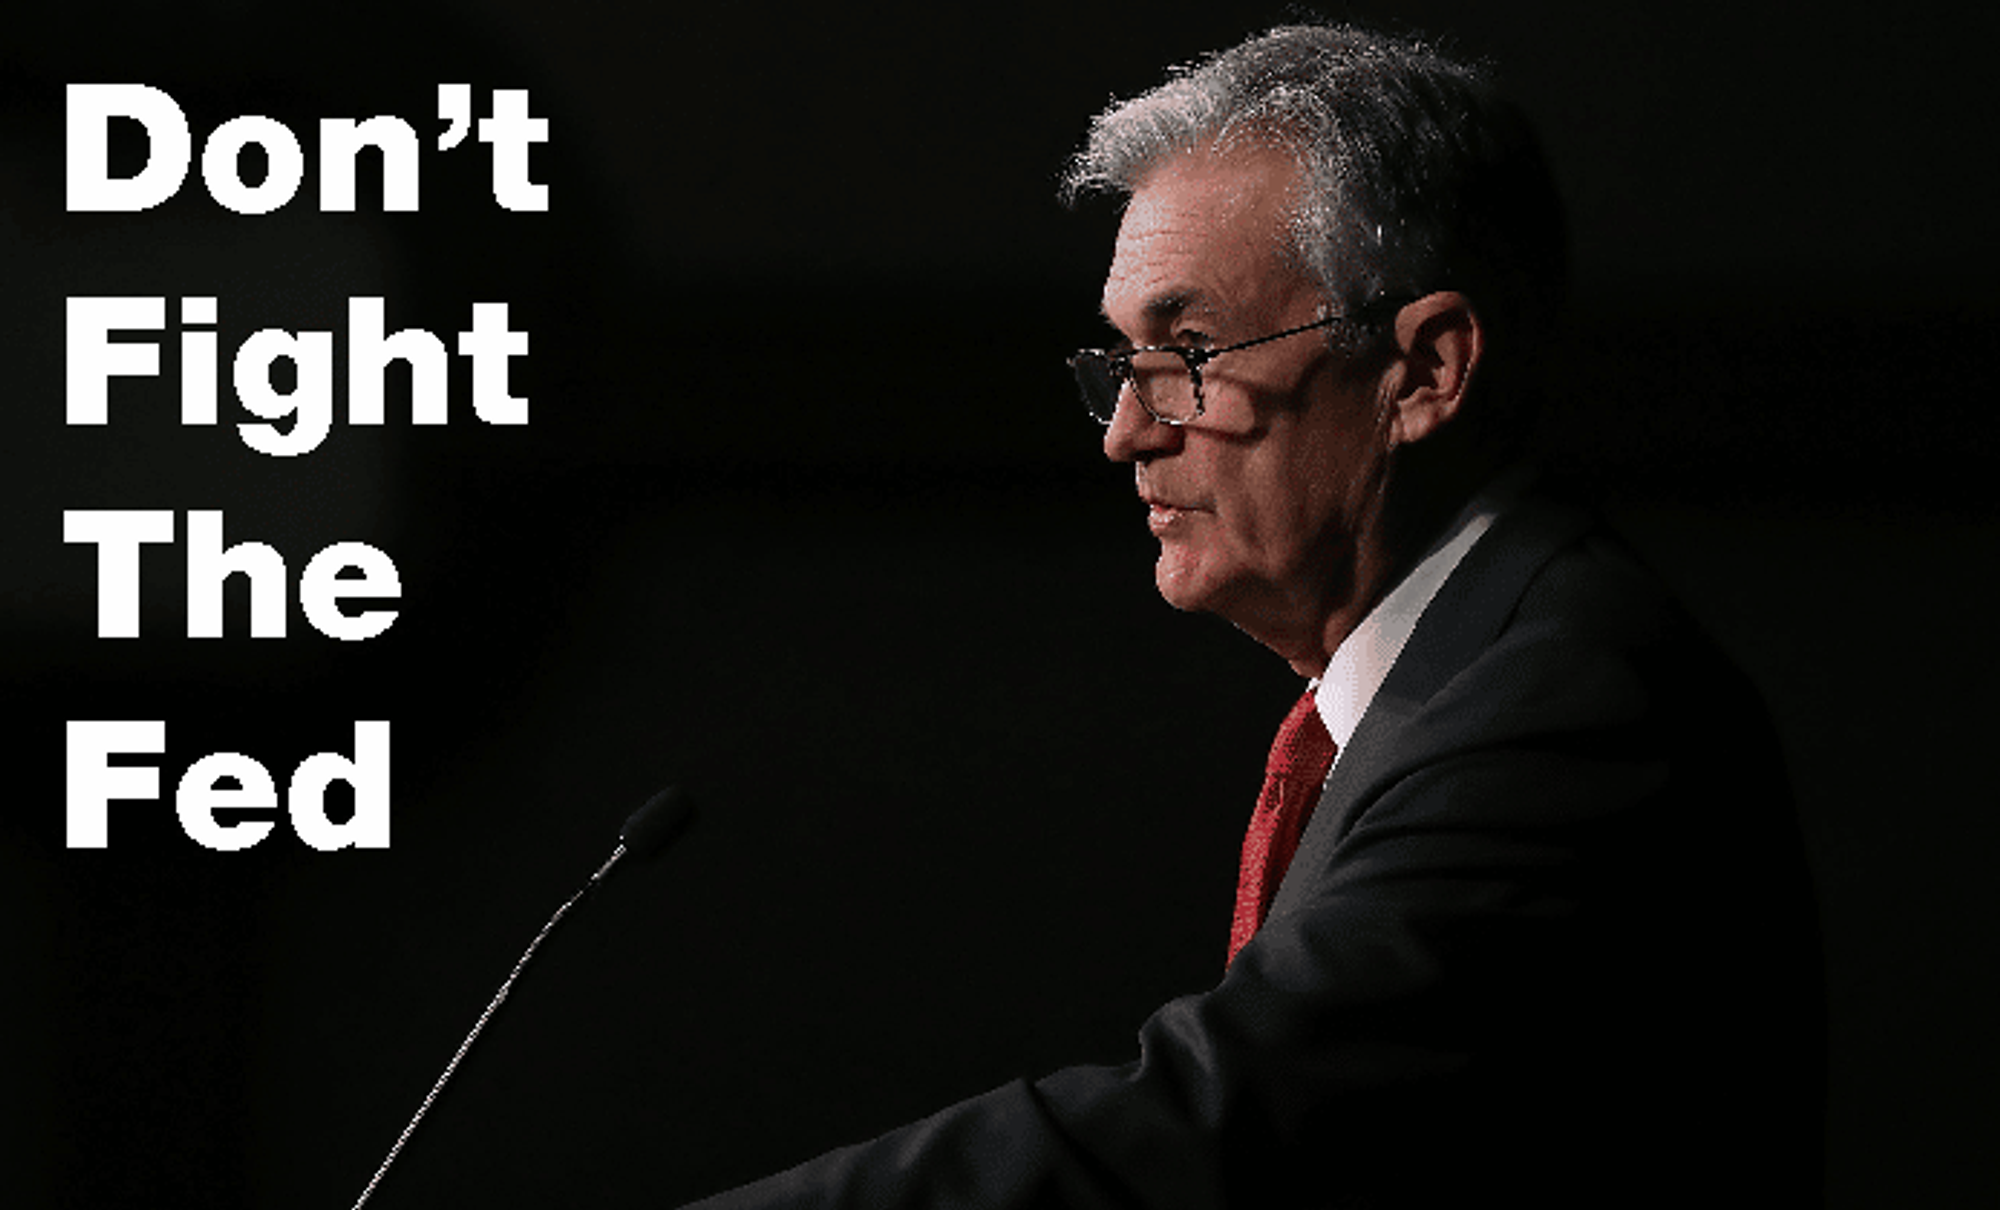 Een investing mantra die je vaak voorbij ziet komen is "Don't fight the Fed".